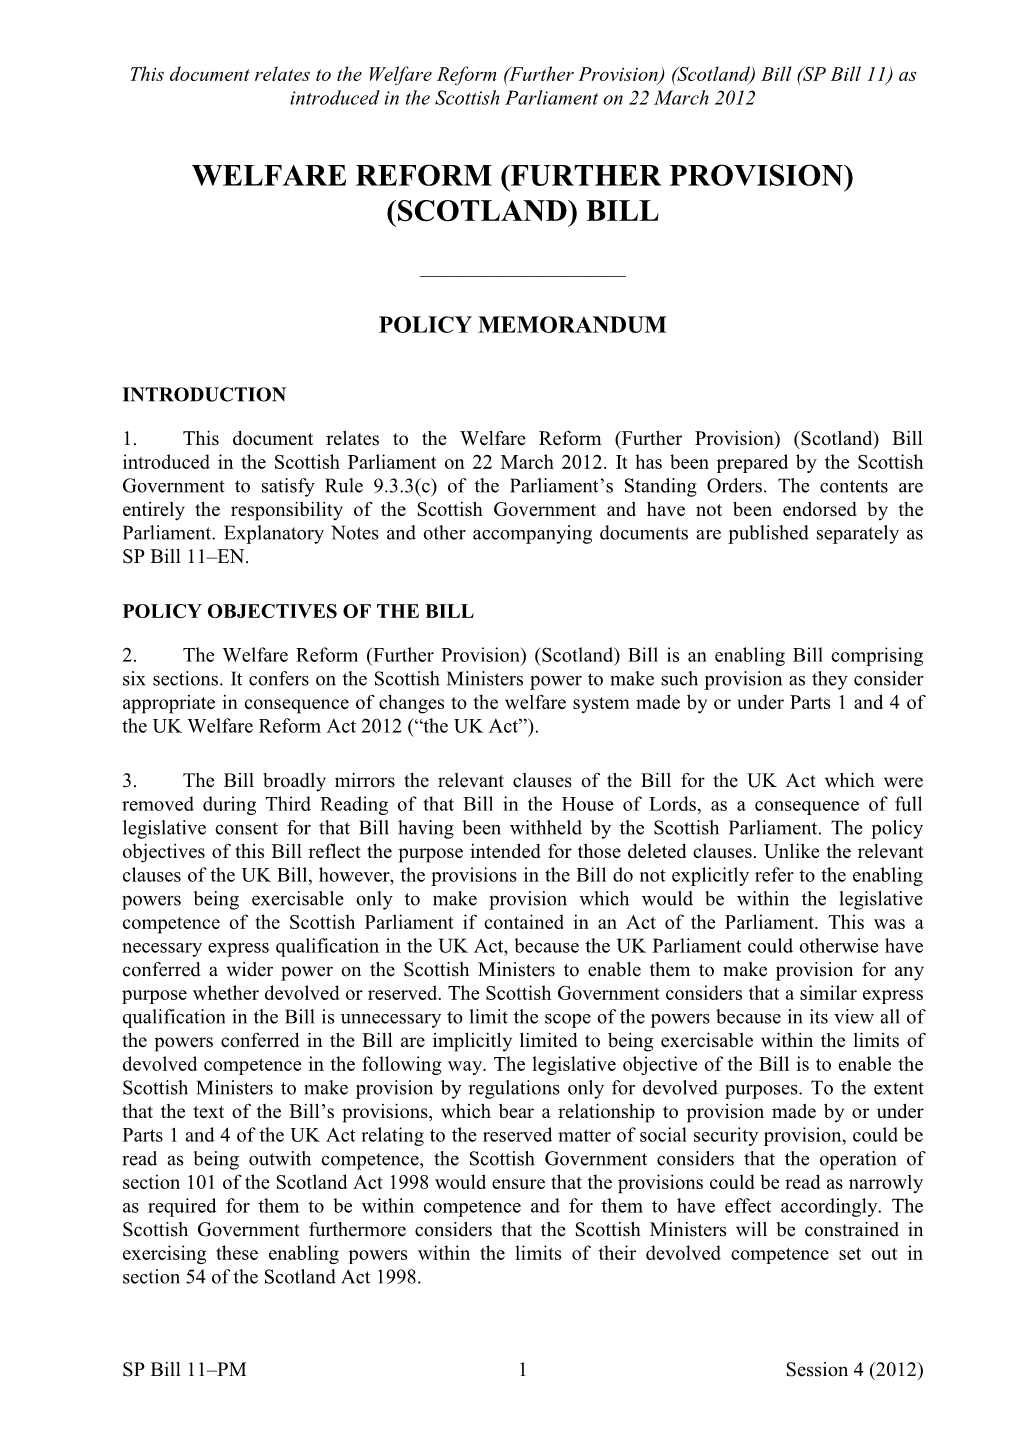 Policy Memorandum (202KB Pdf Posted 23